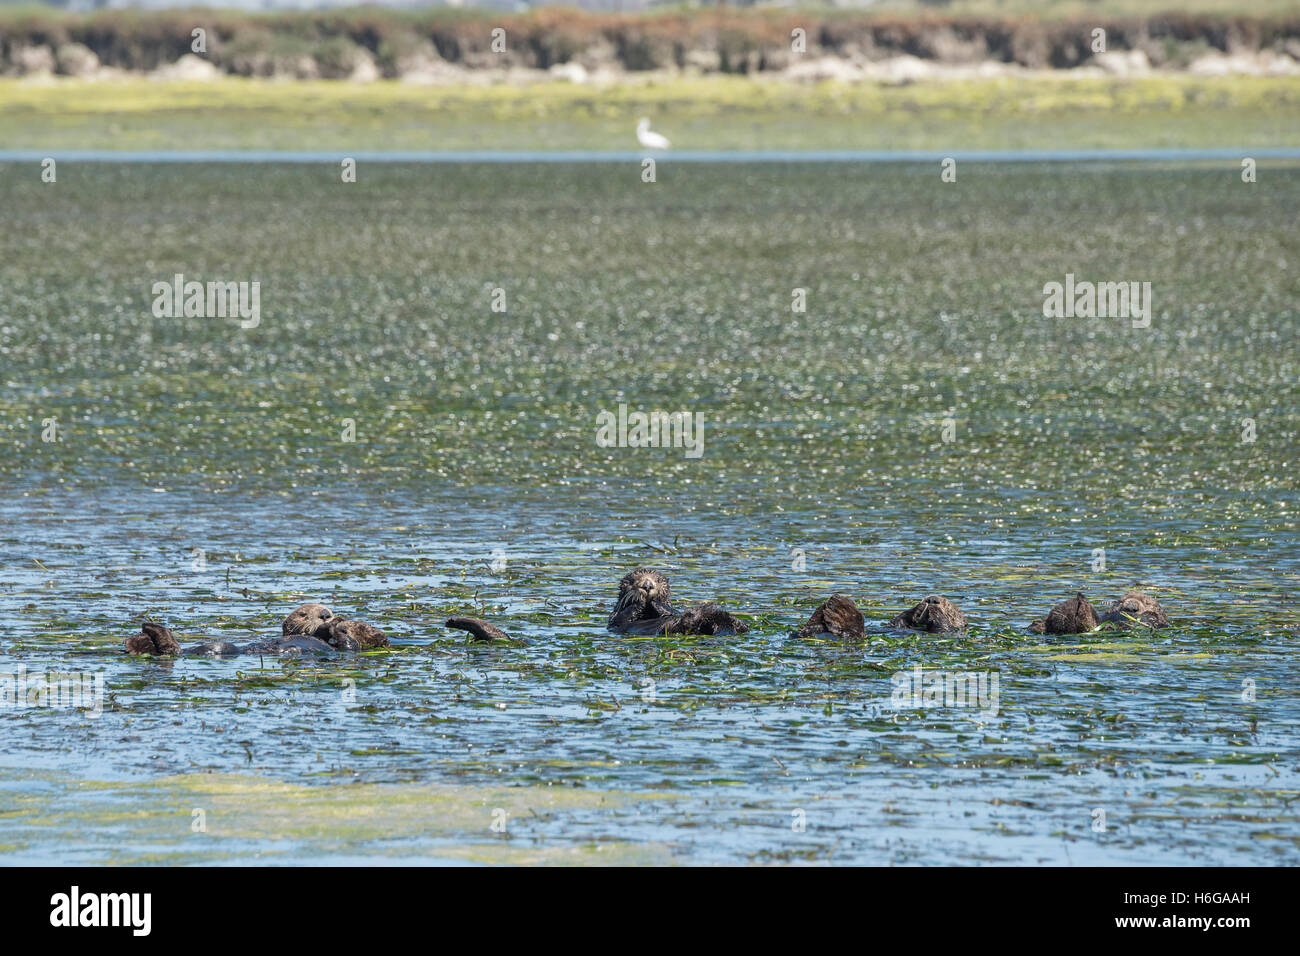 südlichen Seeotter, Enhydra Lutris Nereis, ruht in einem Floß während umhüllt von Aal Rasen, Elkhorn Slough, Kalifornien, USA Stockfoto